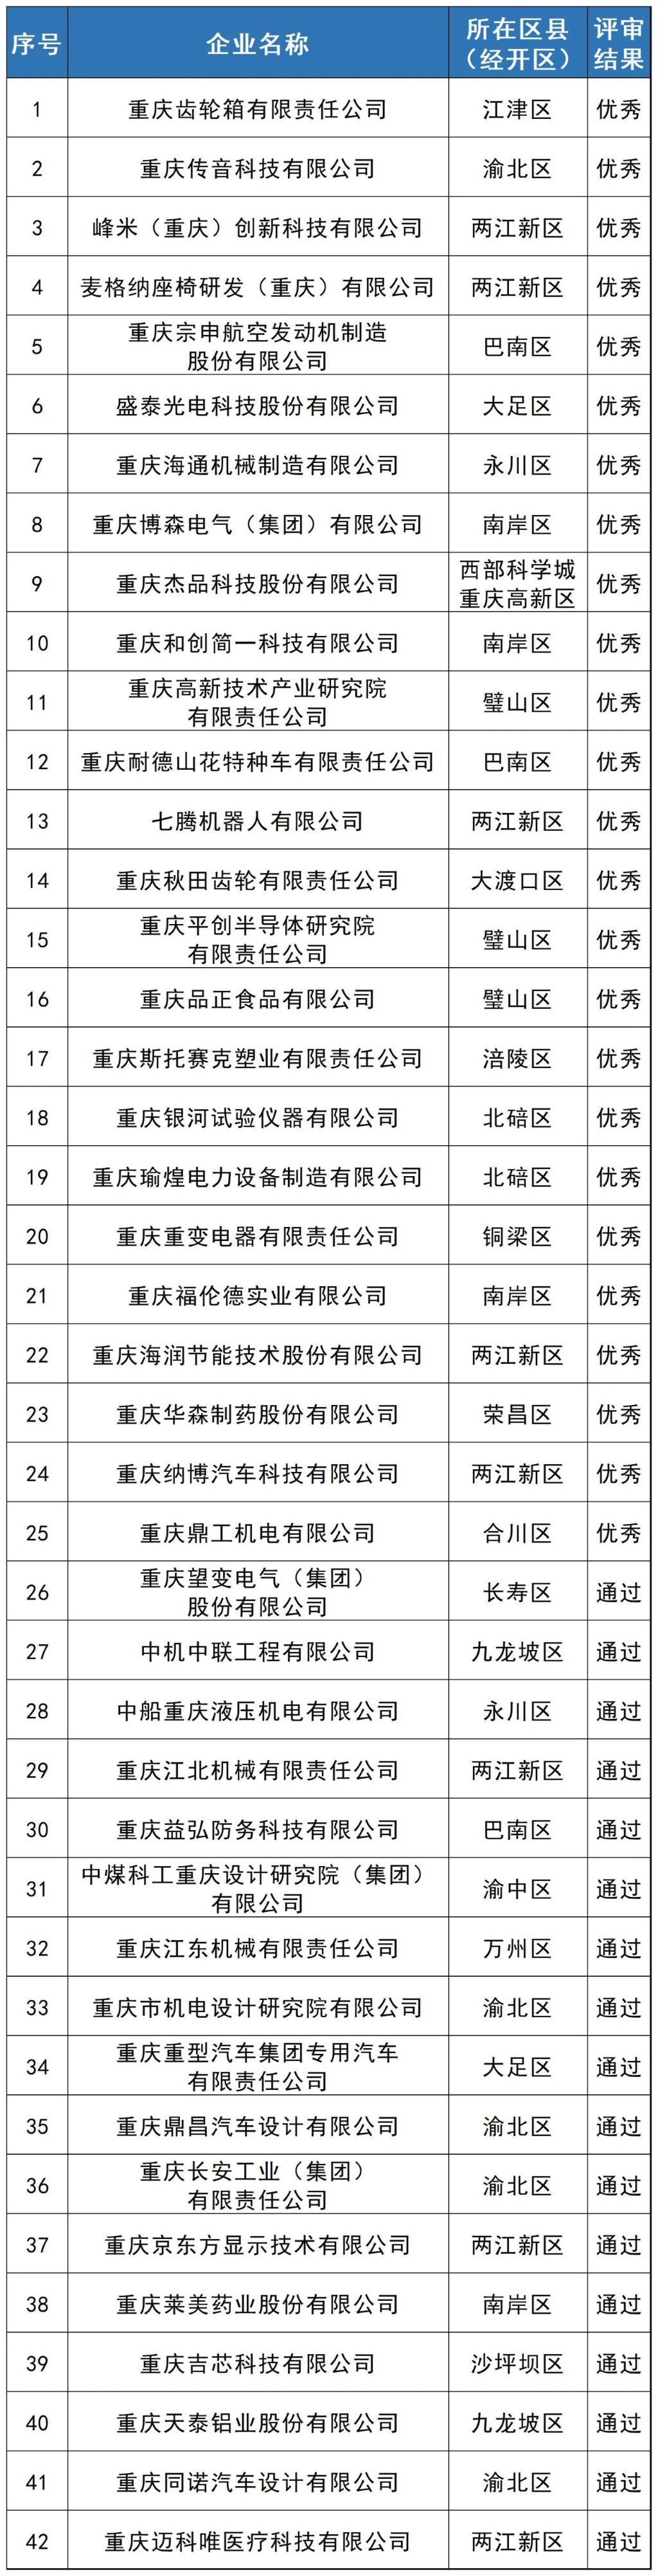 2023年度市级工业设计中心名单。图源：重庆市经济信息委公众号